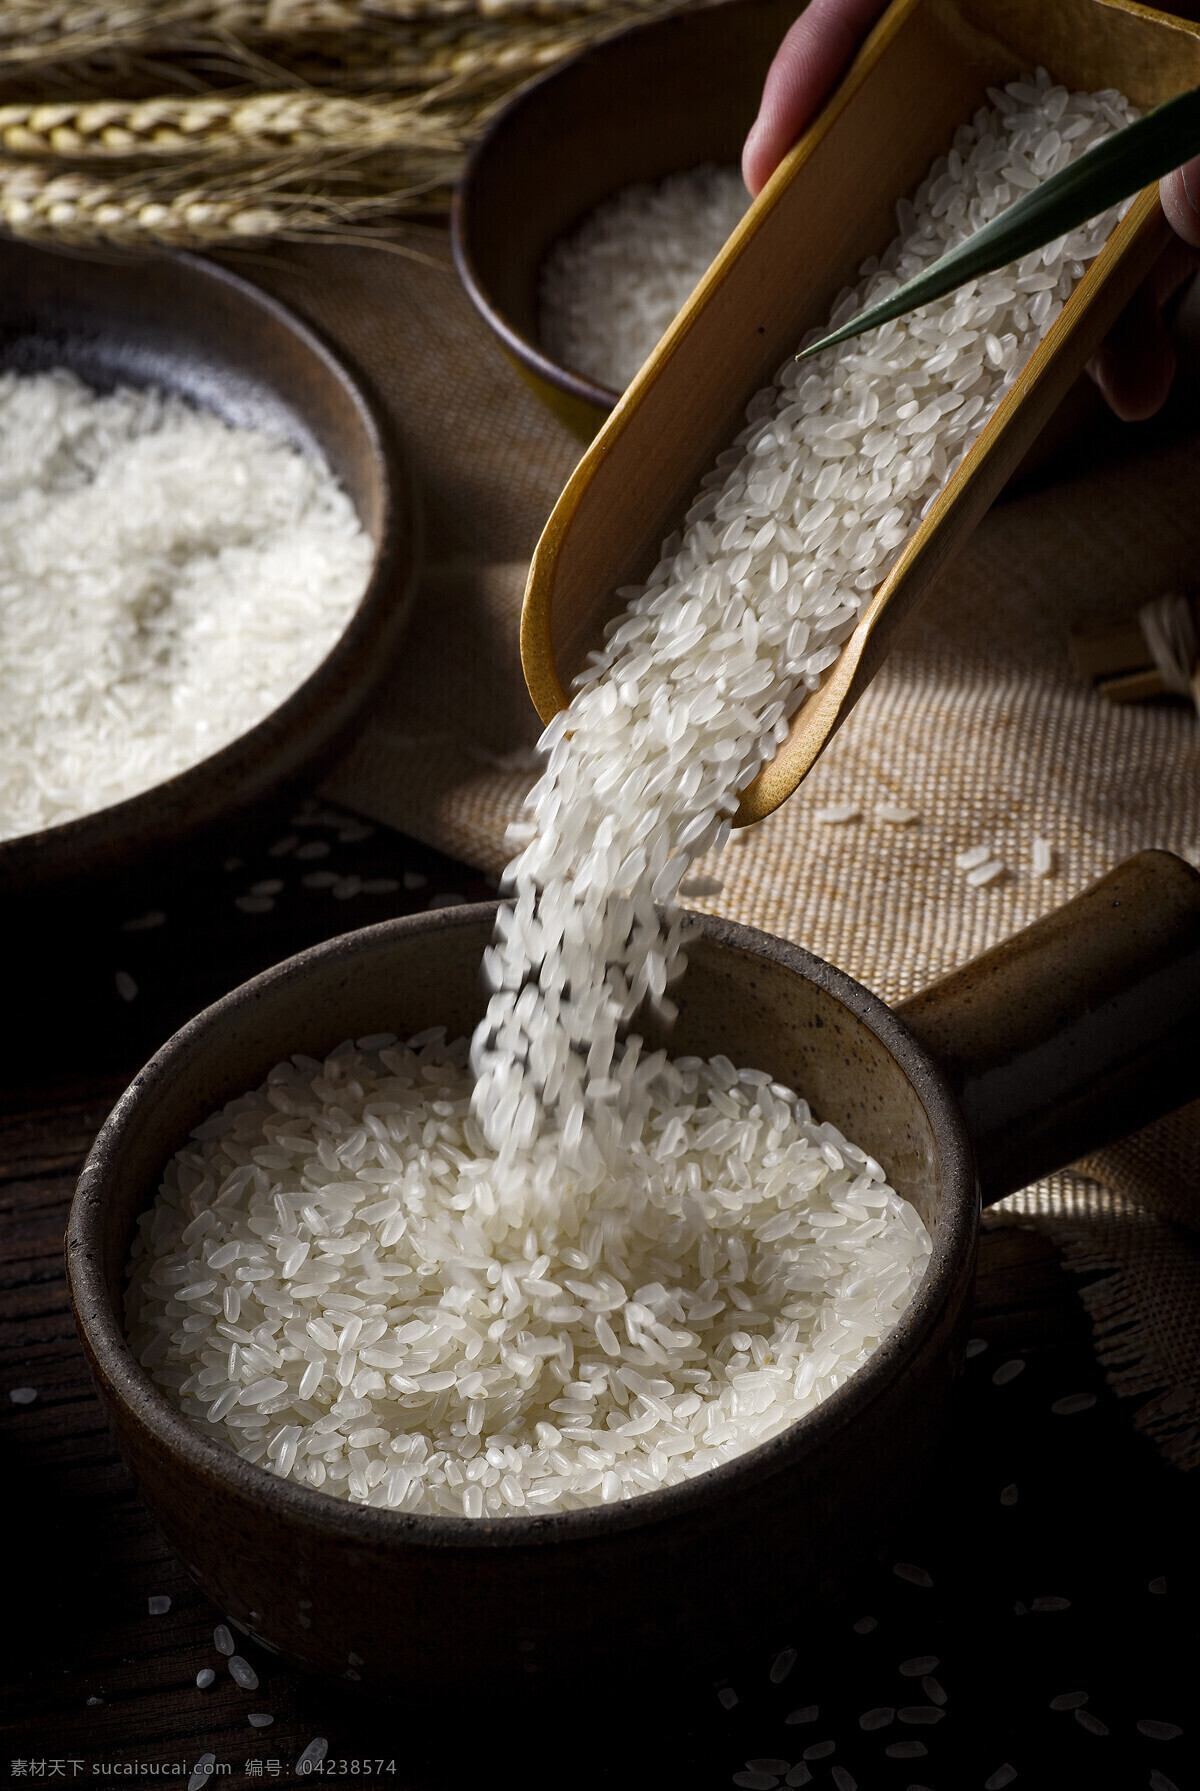 优质大米 大米 香米 稻花香 大米加工 无添加 纯天然 生活百科 生活素材